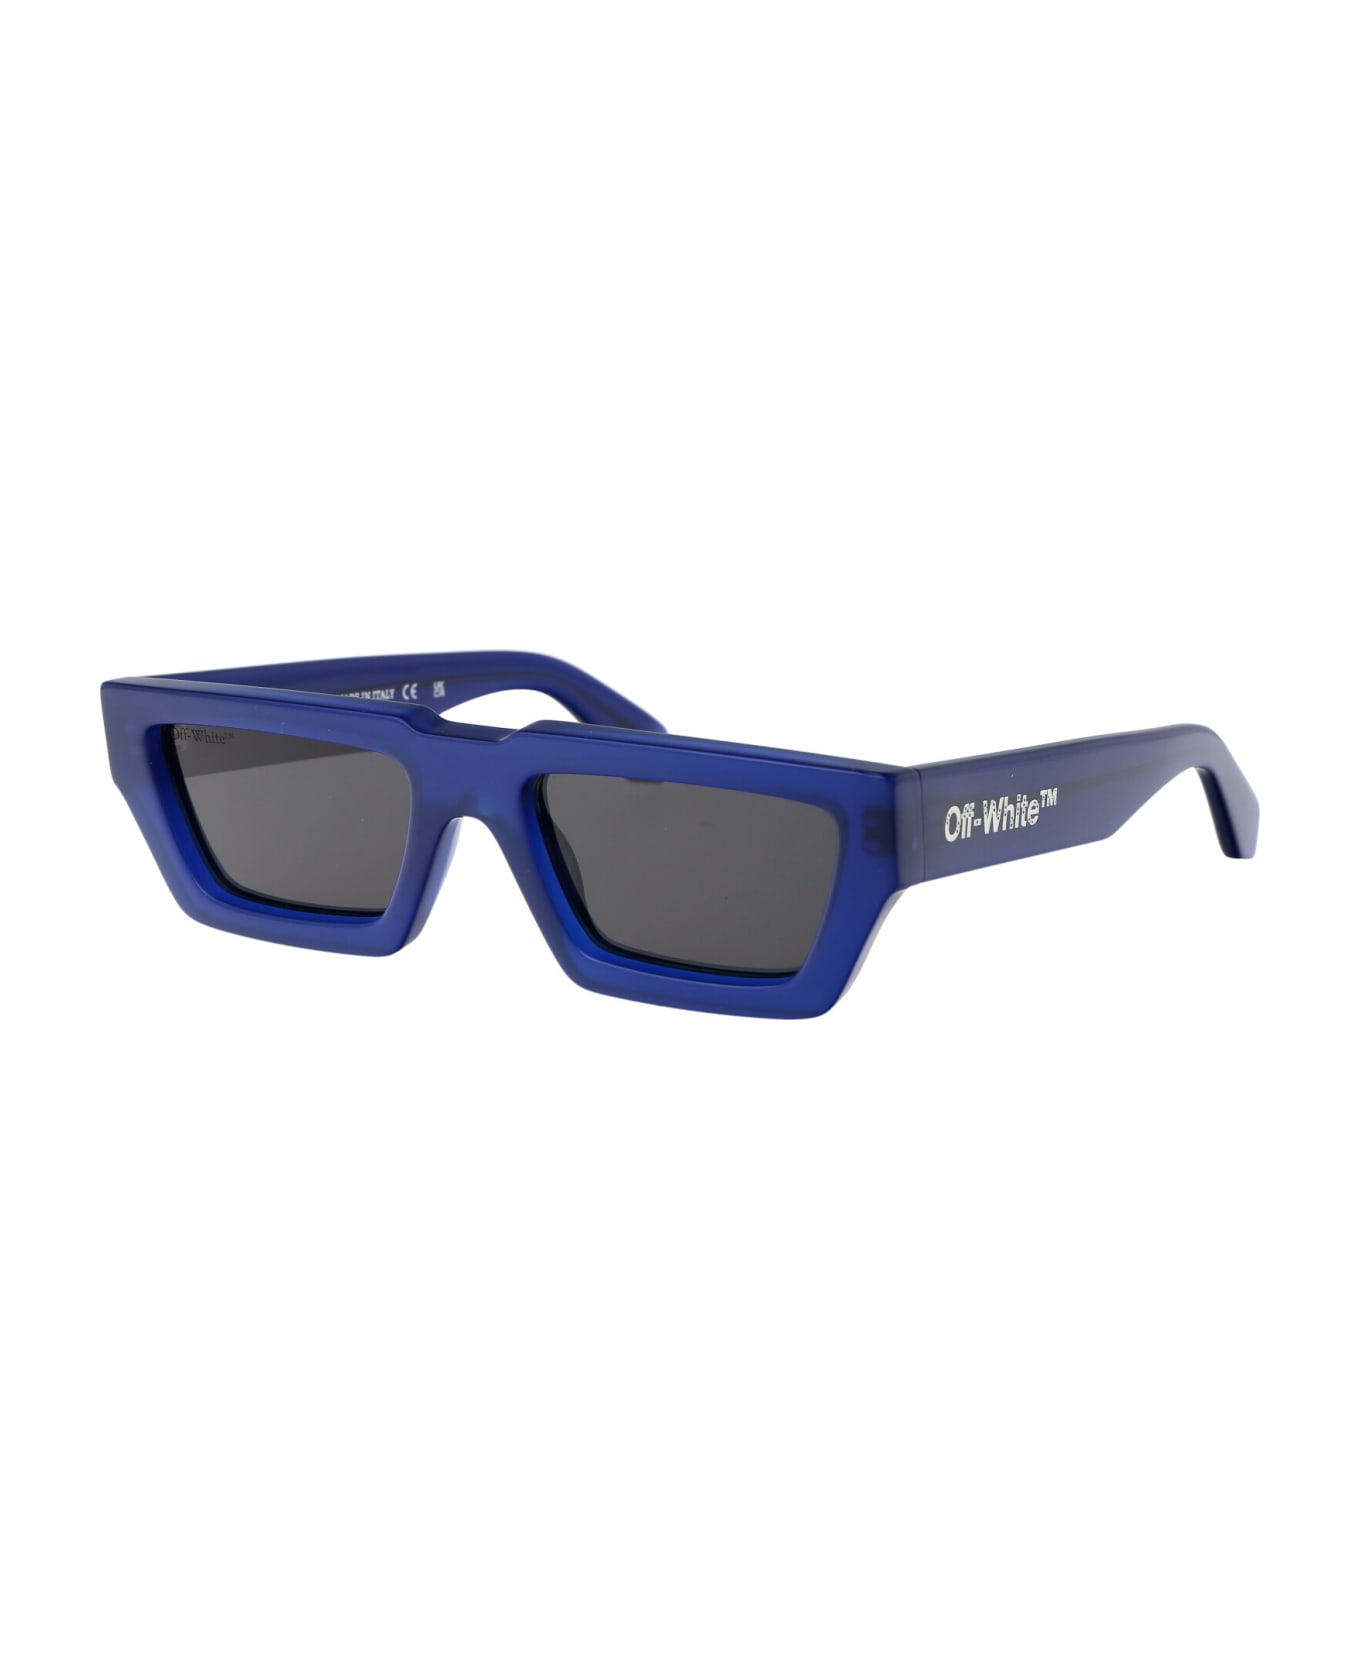 Off-White Manchester Rectangular Frame Sunglasses - 4607 BLUE